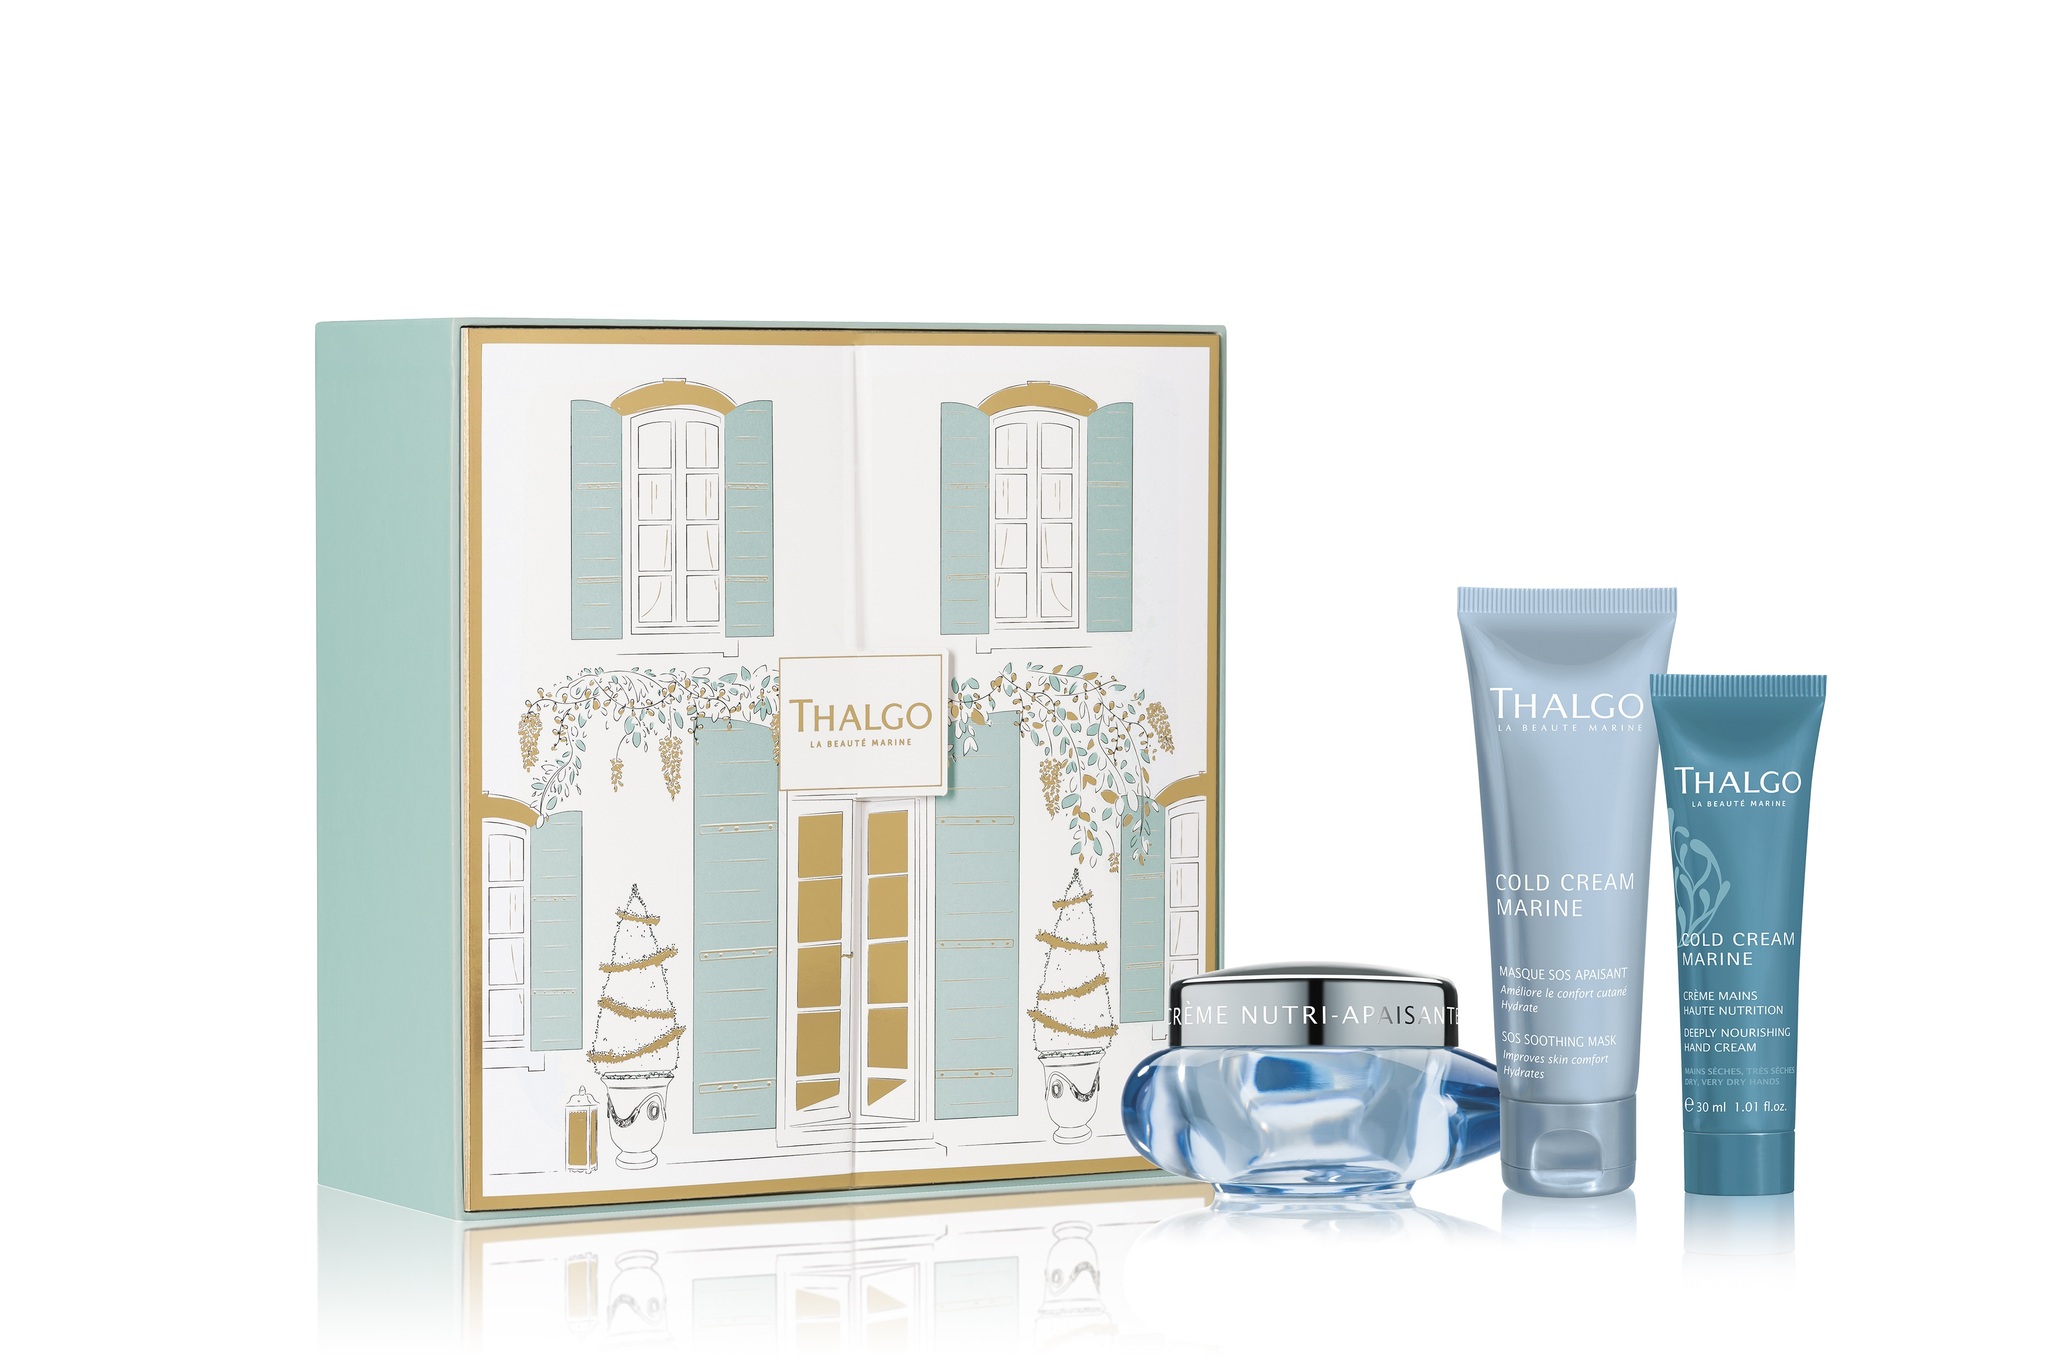 THALGO Cold Cream Marine Gift Set - For tørr og sensitiv hud, Krem, SOS maske, håndkrem